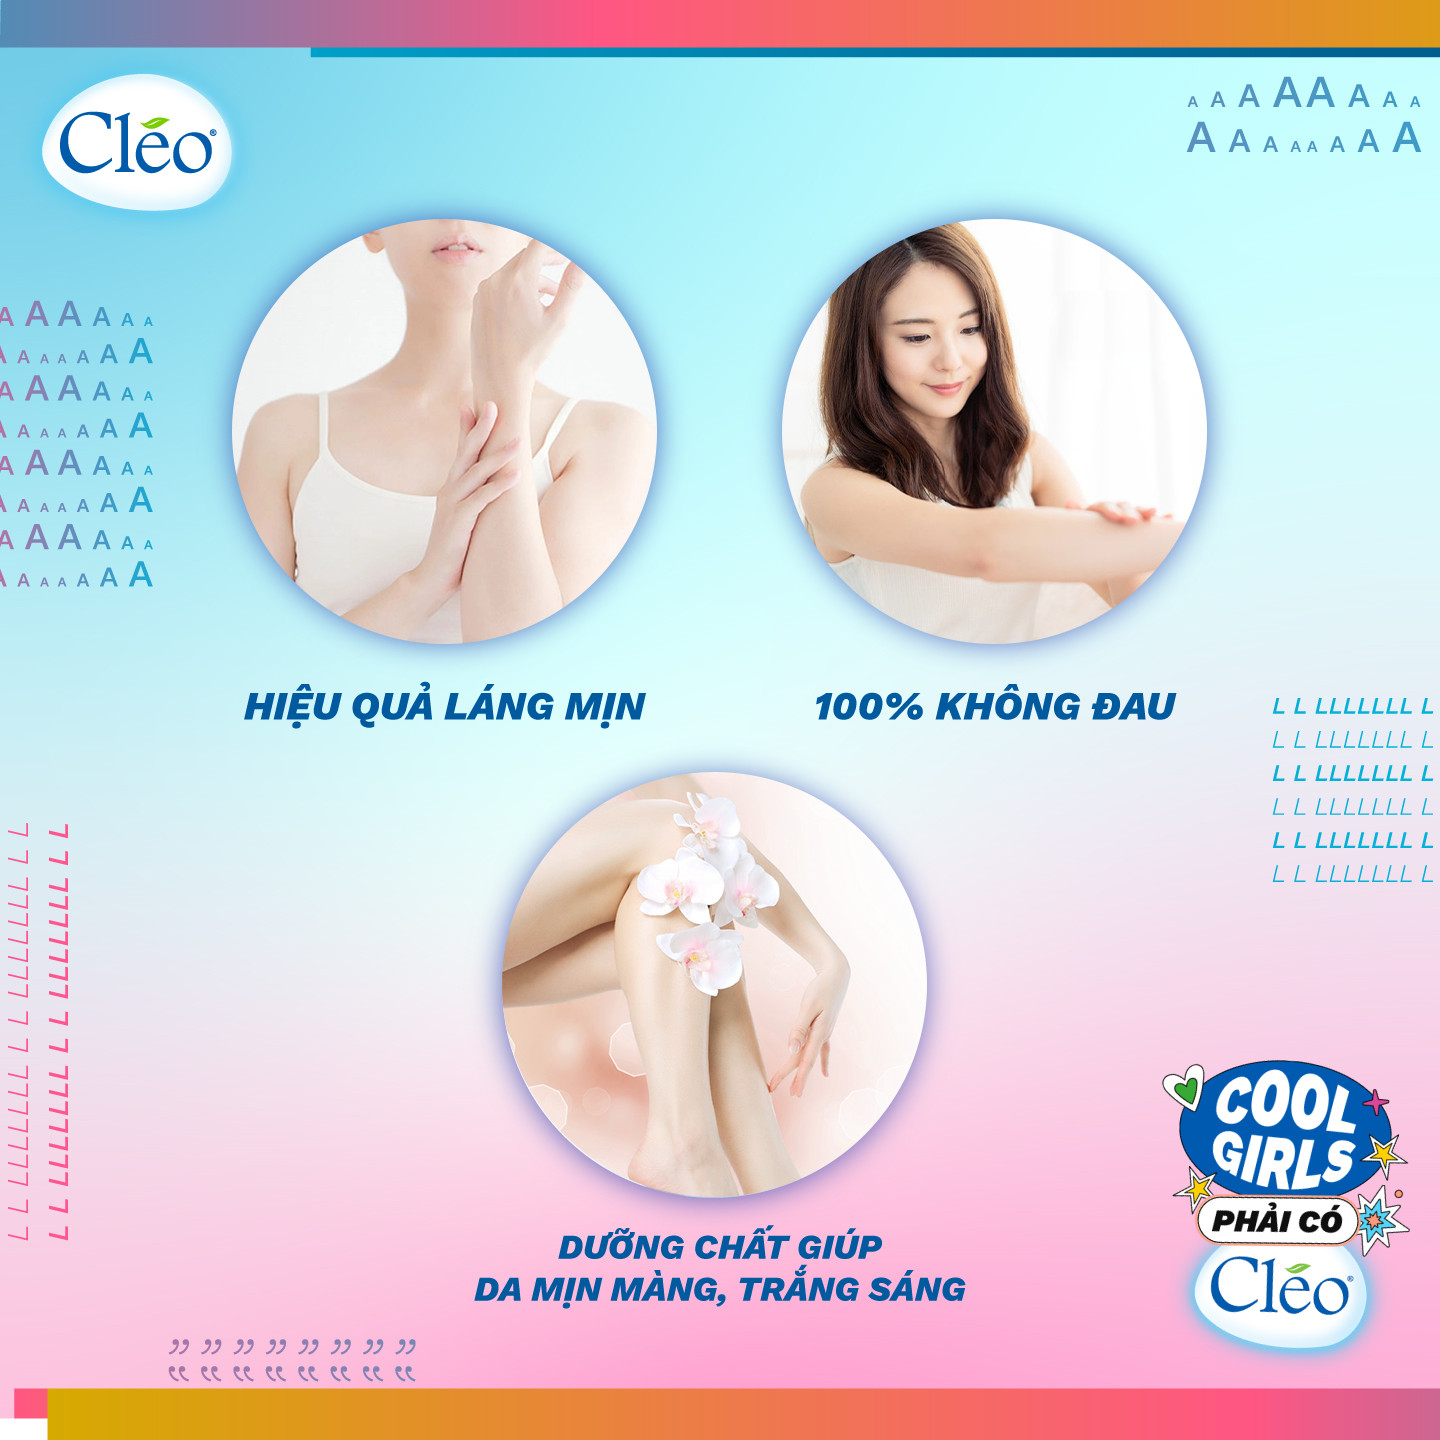 Kem tẩy lông Chiết Xuất Bơ Cleo dạng sữa dành cho vùng tay chân dành cho mọi loại da 90ml, an toàn, không đau và đạt hiệu quả nhanh chóng